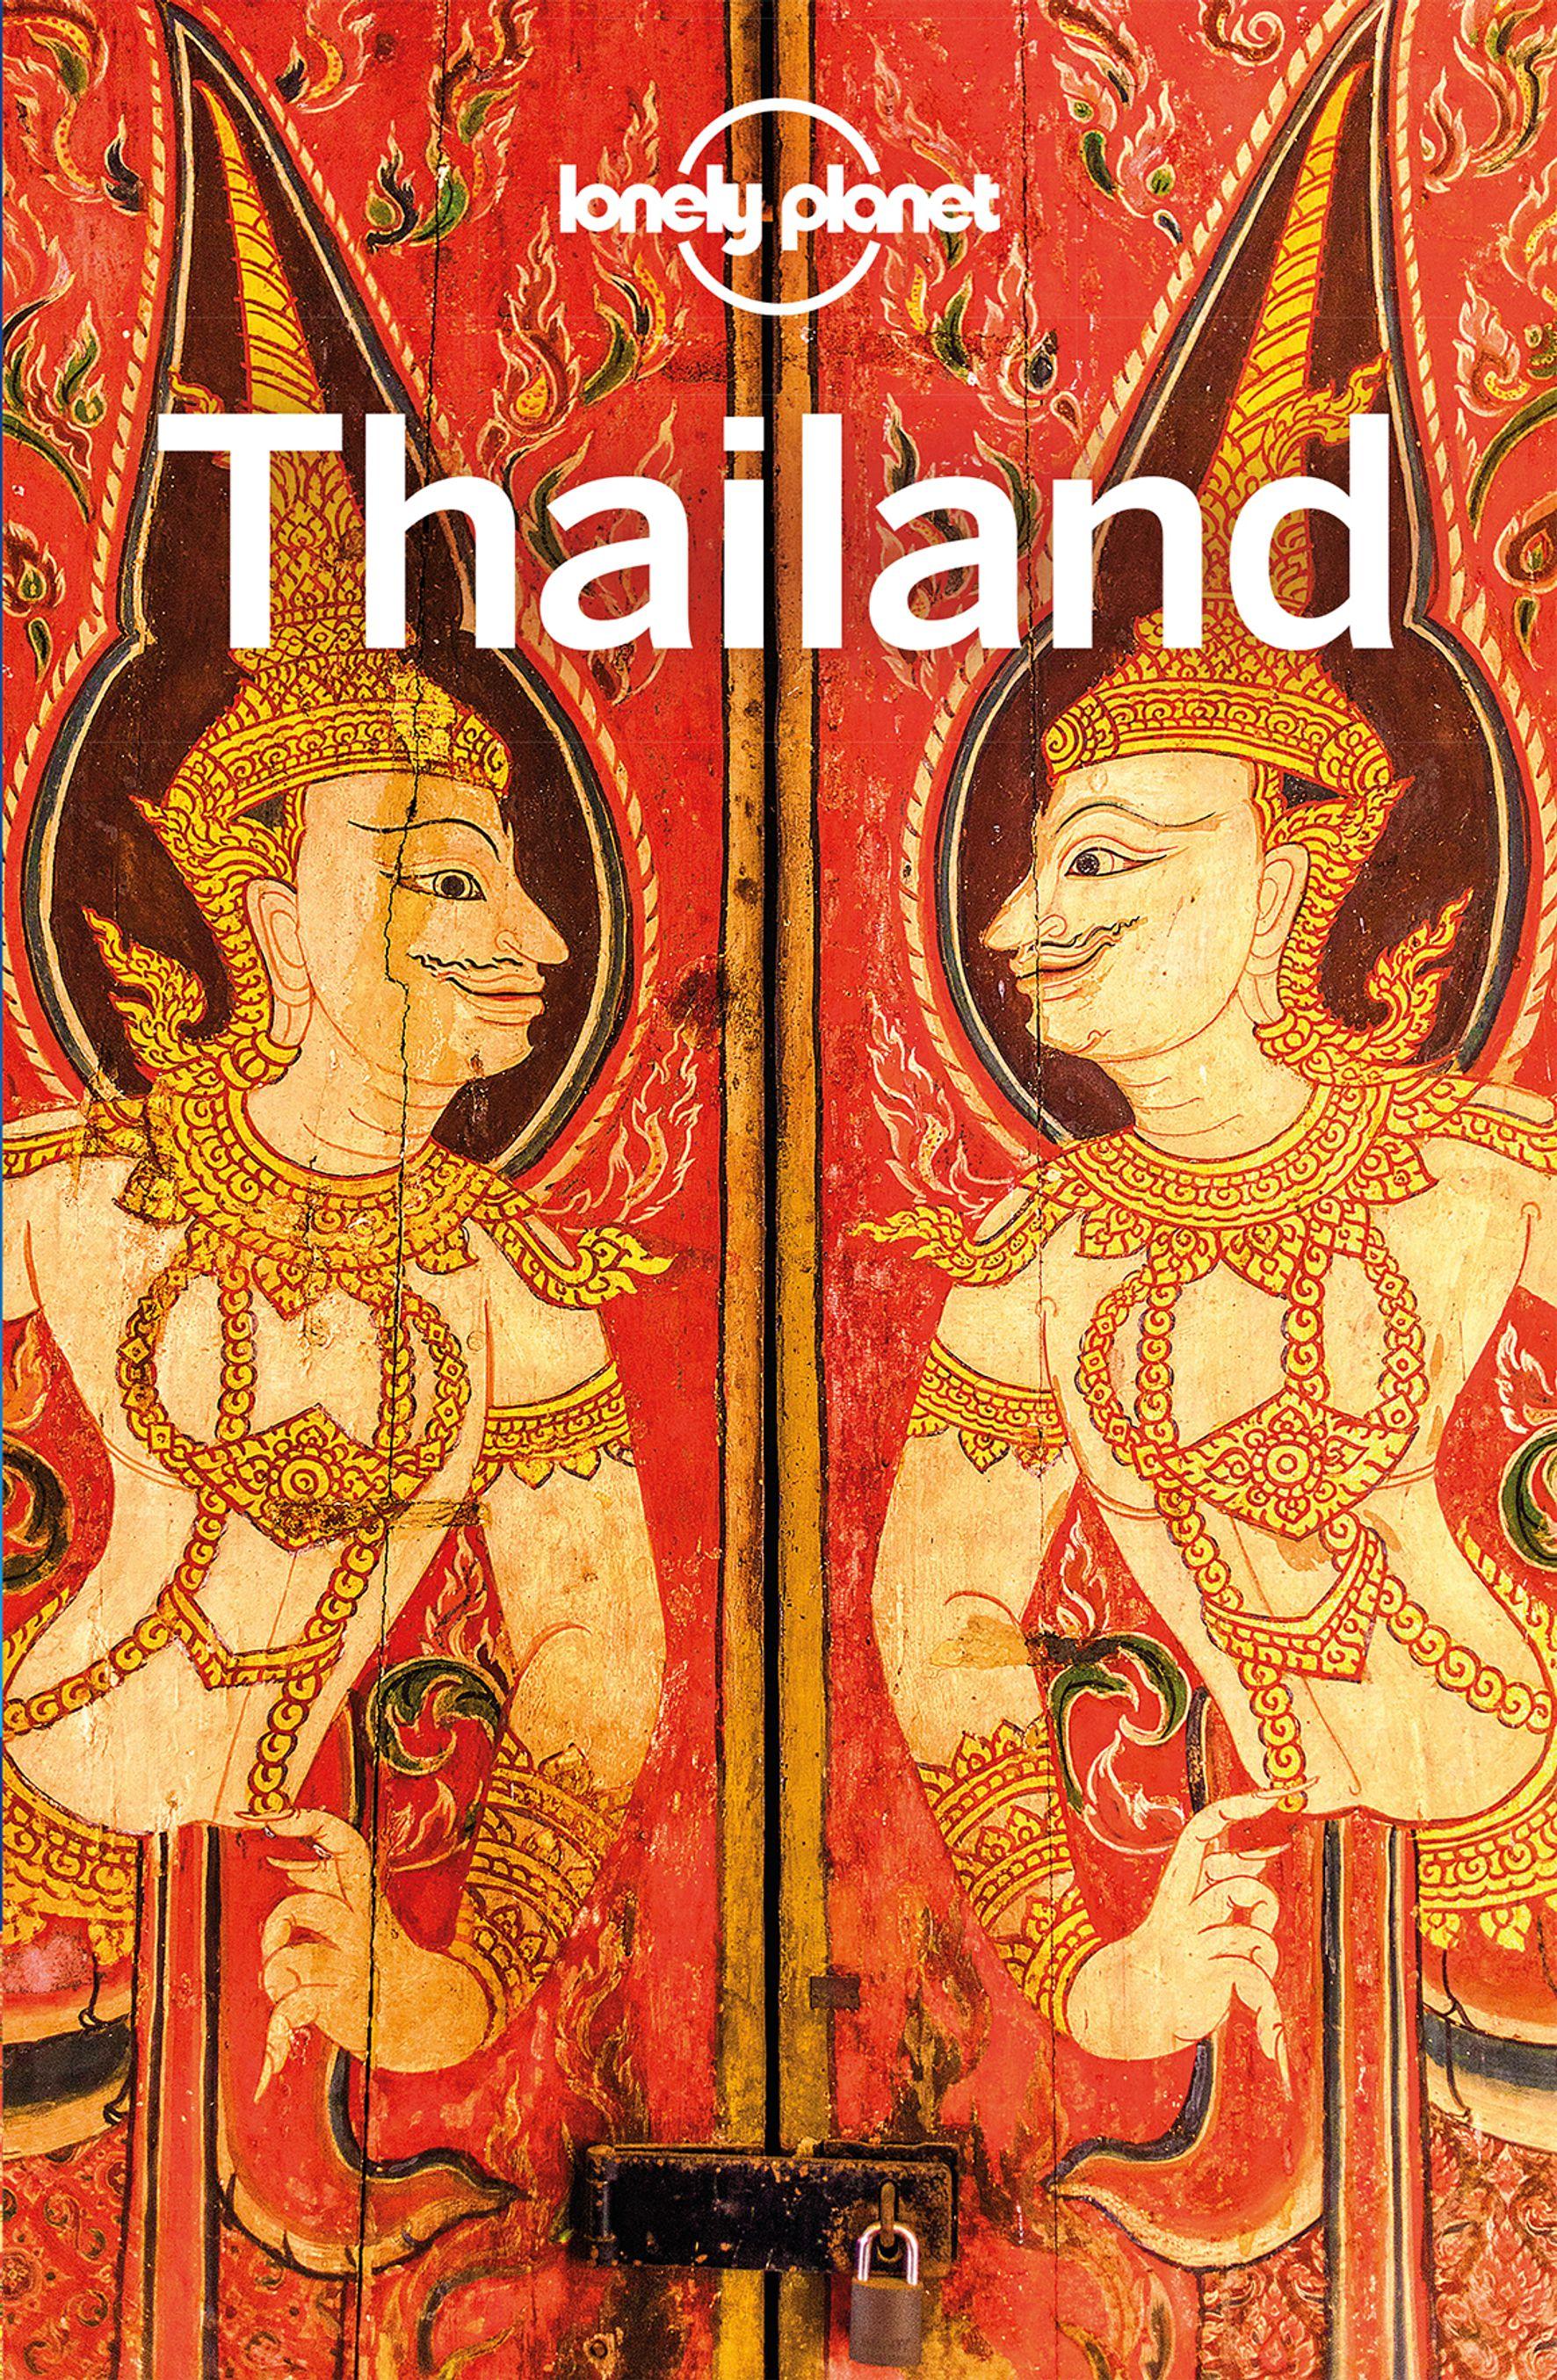 LONELY PLANET Reiseführer Thailand Eigene Wege gehen und Einzigartiges erleben.